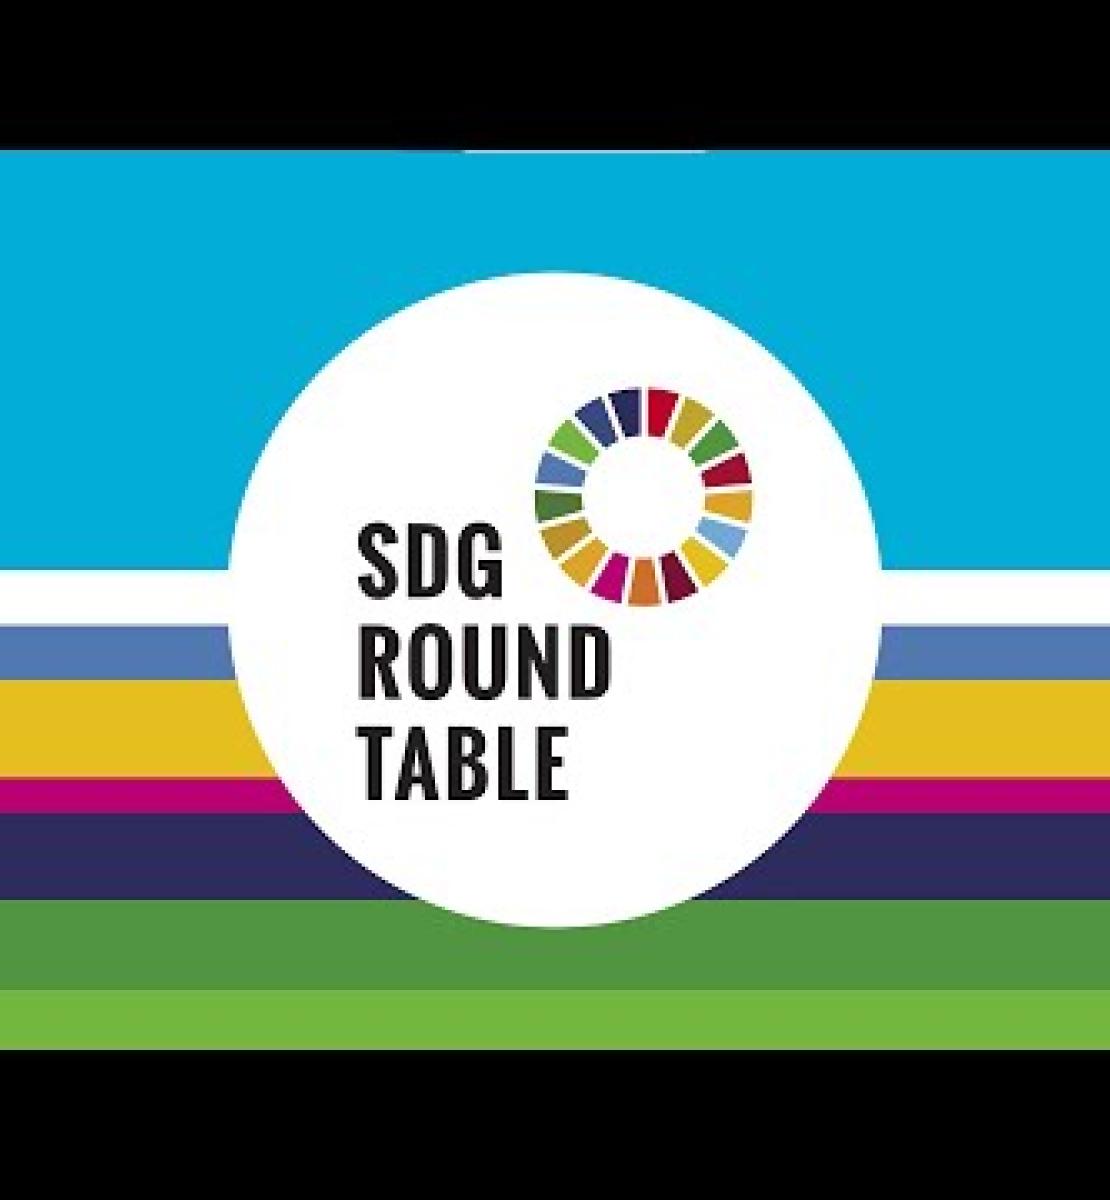 会前畅谈“聚焦可持续发展目标”：联合国驻地协调员圆桌会议 